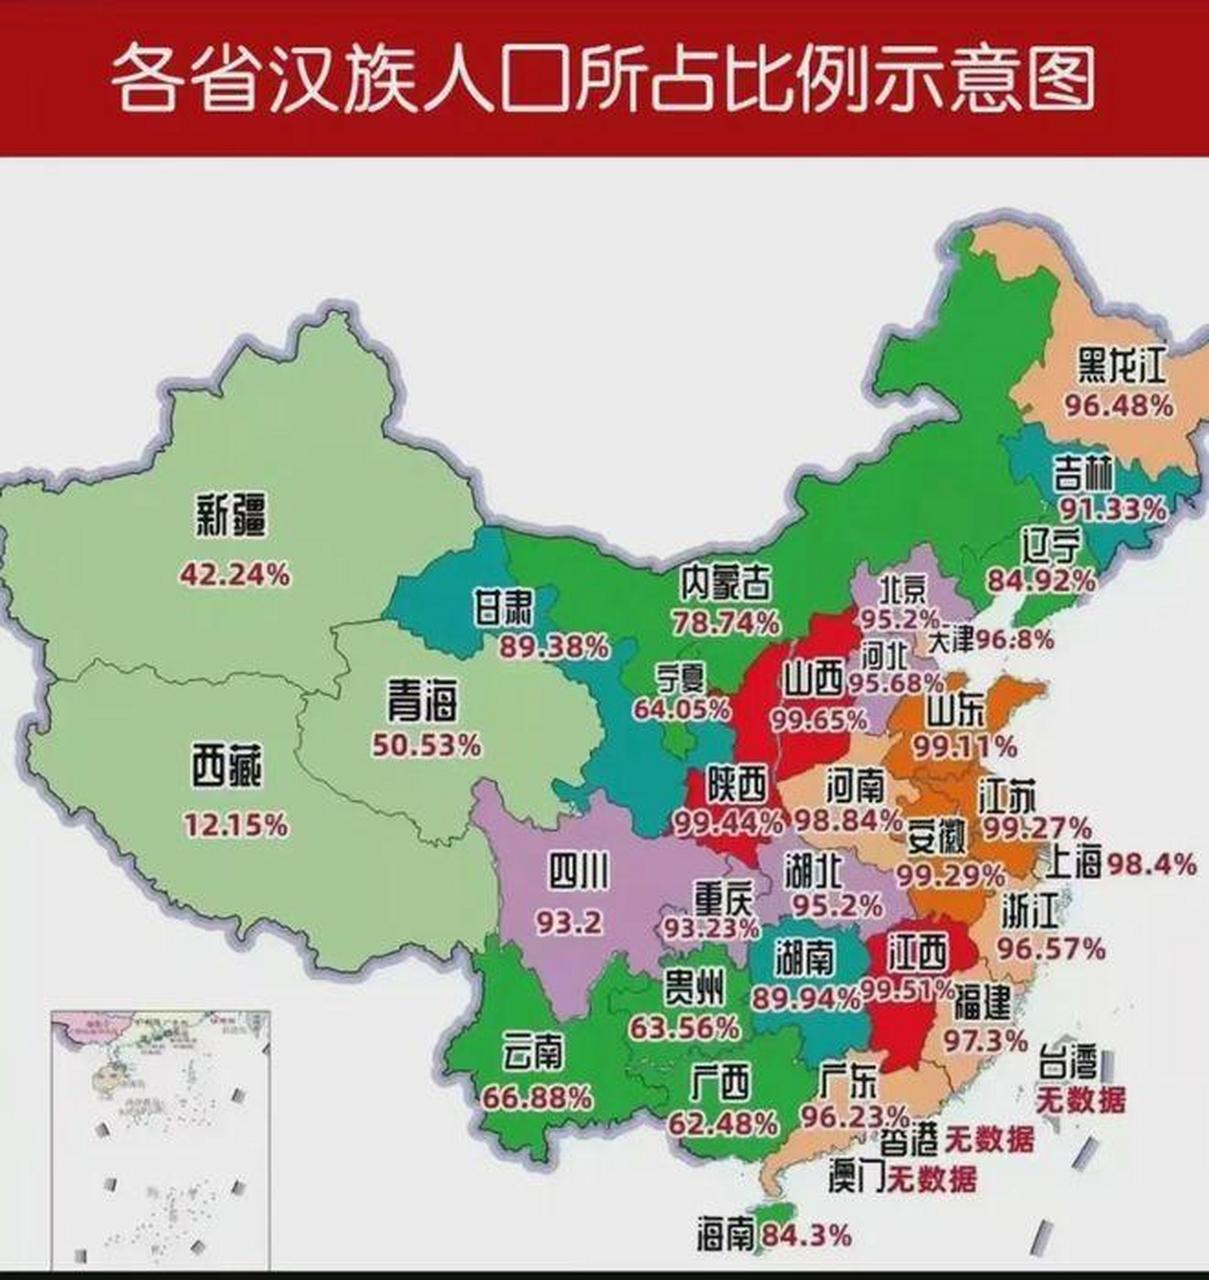 没想到,山西,江西与陕西的汉族人口比例是最高的,我大河南的汉族人口